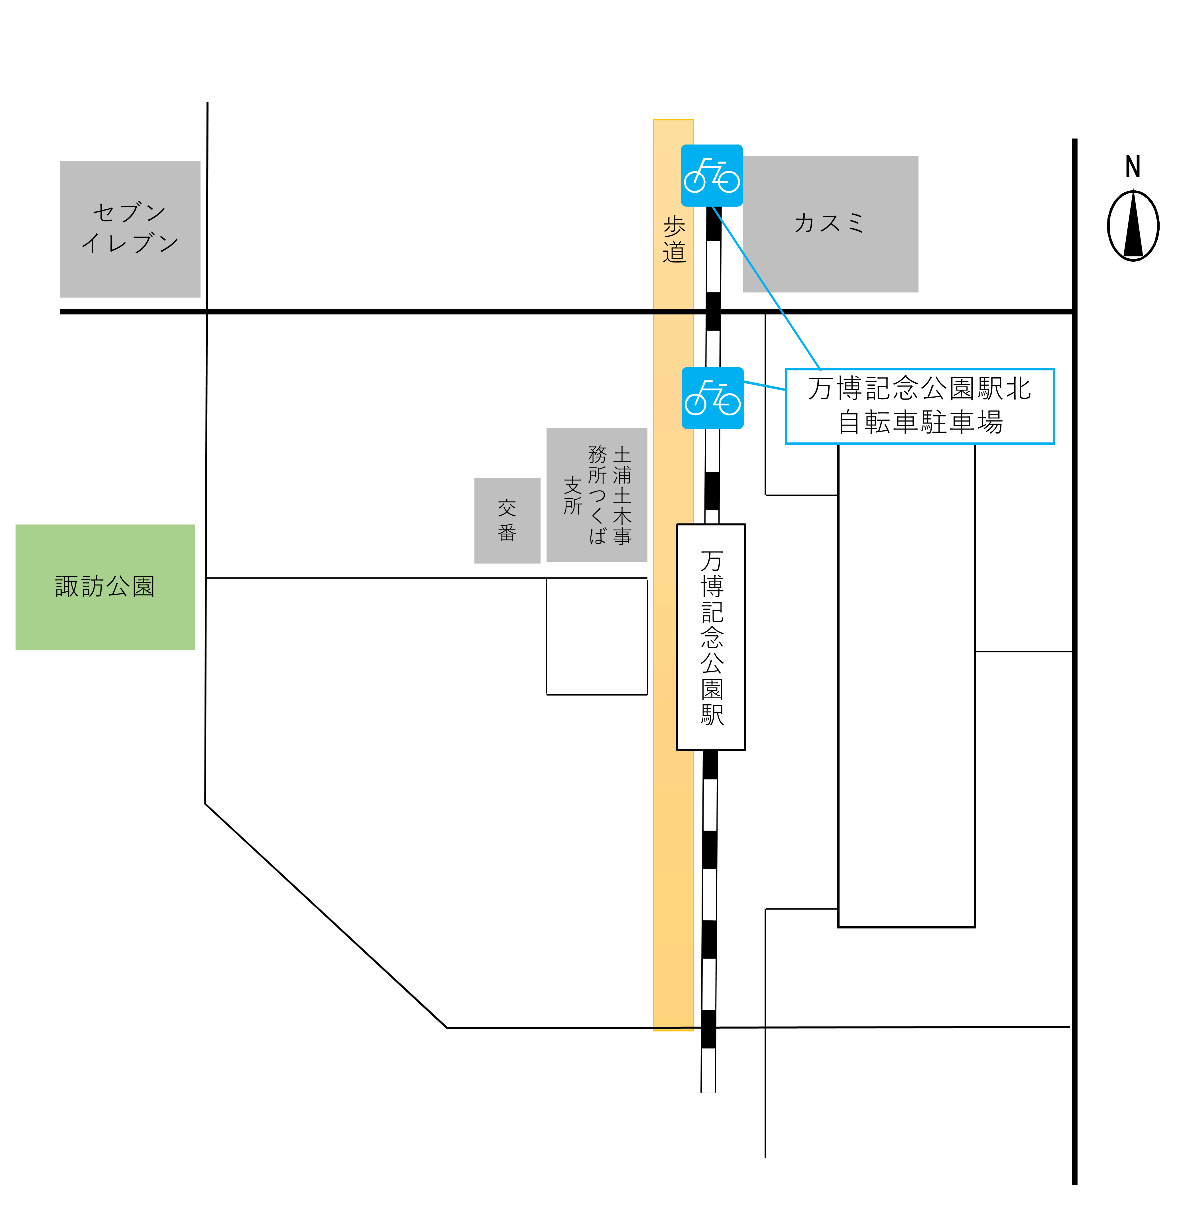 万博記念公園駅周辺自転車等駐車場の位置図